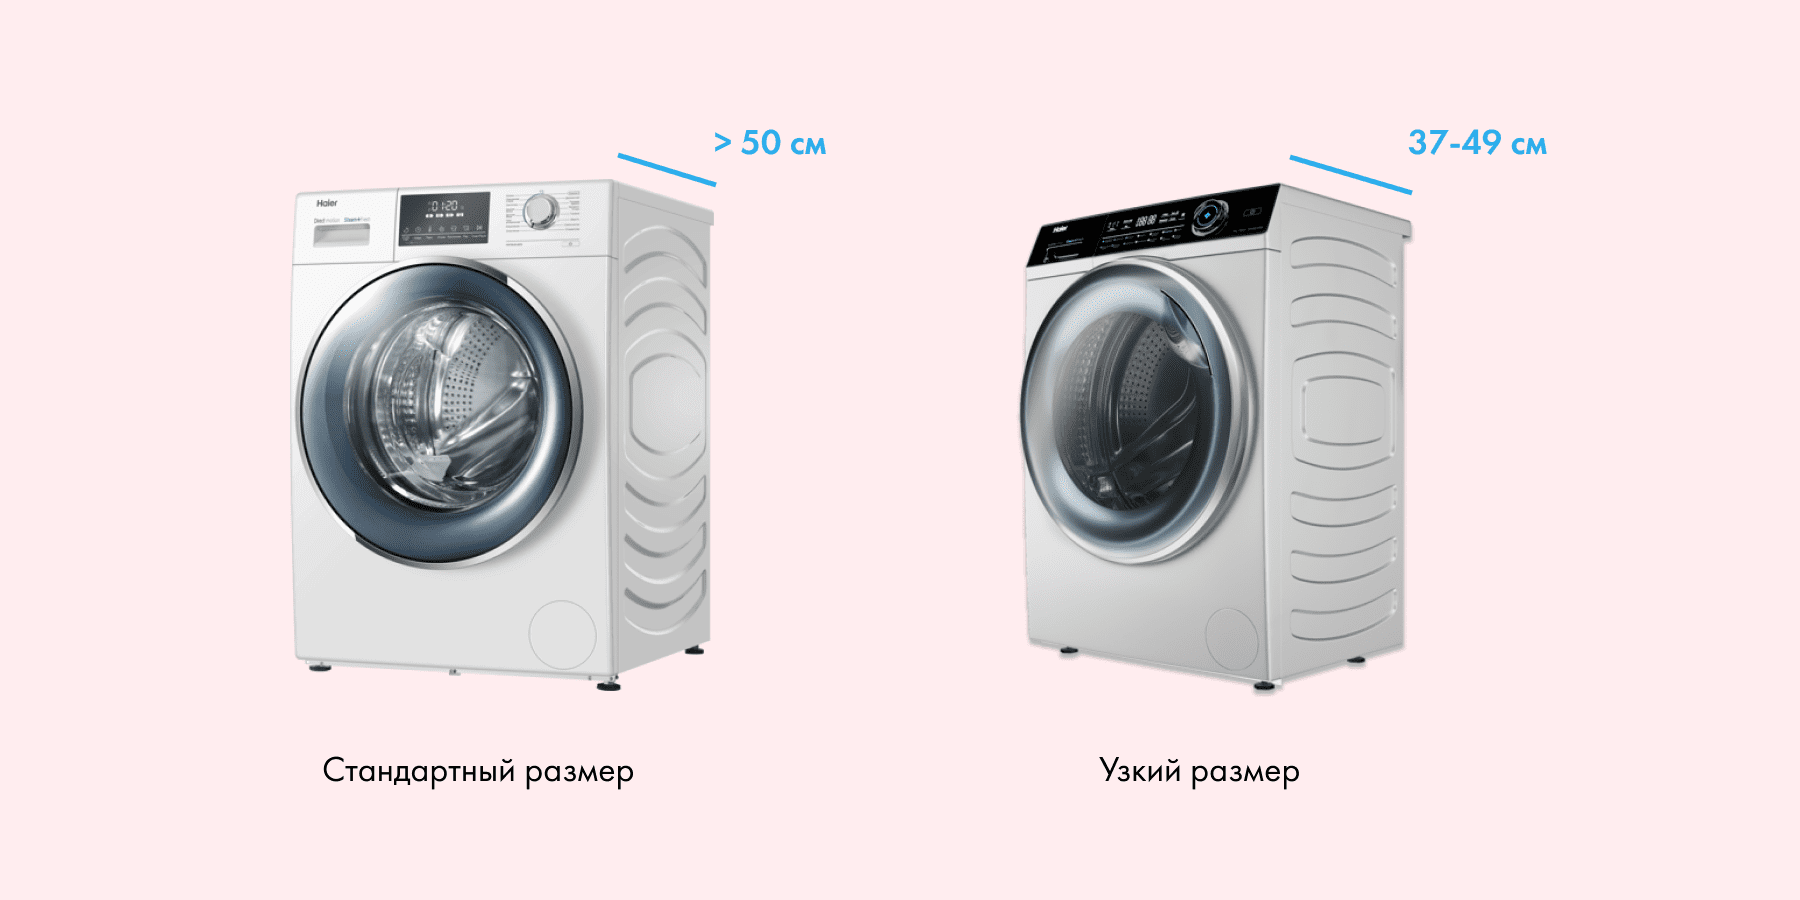 Преимущества стиральных машин с фронтальной загрузкой